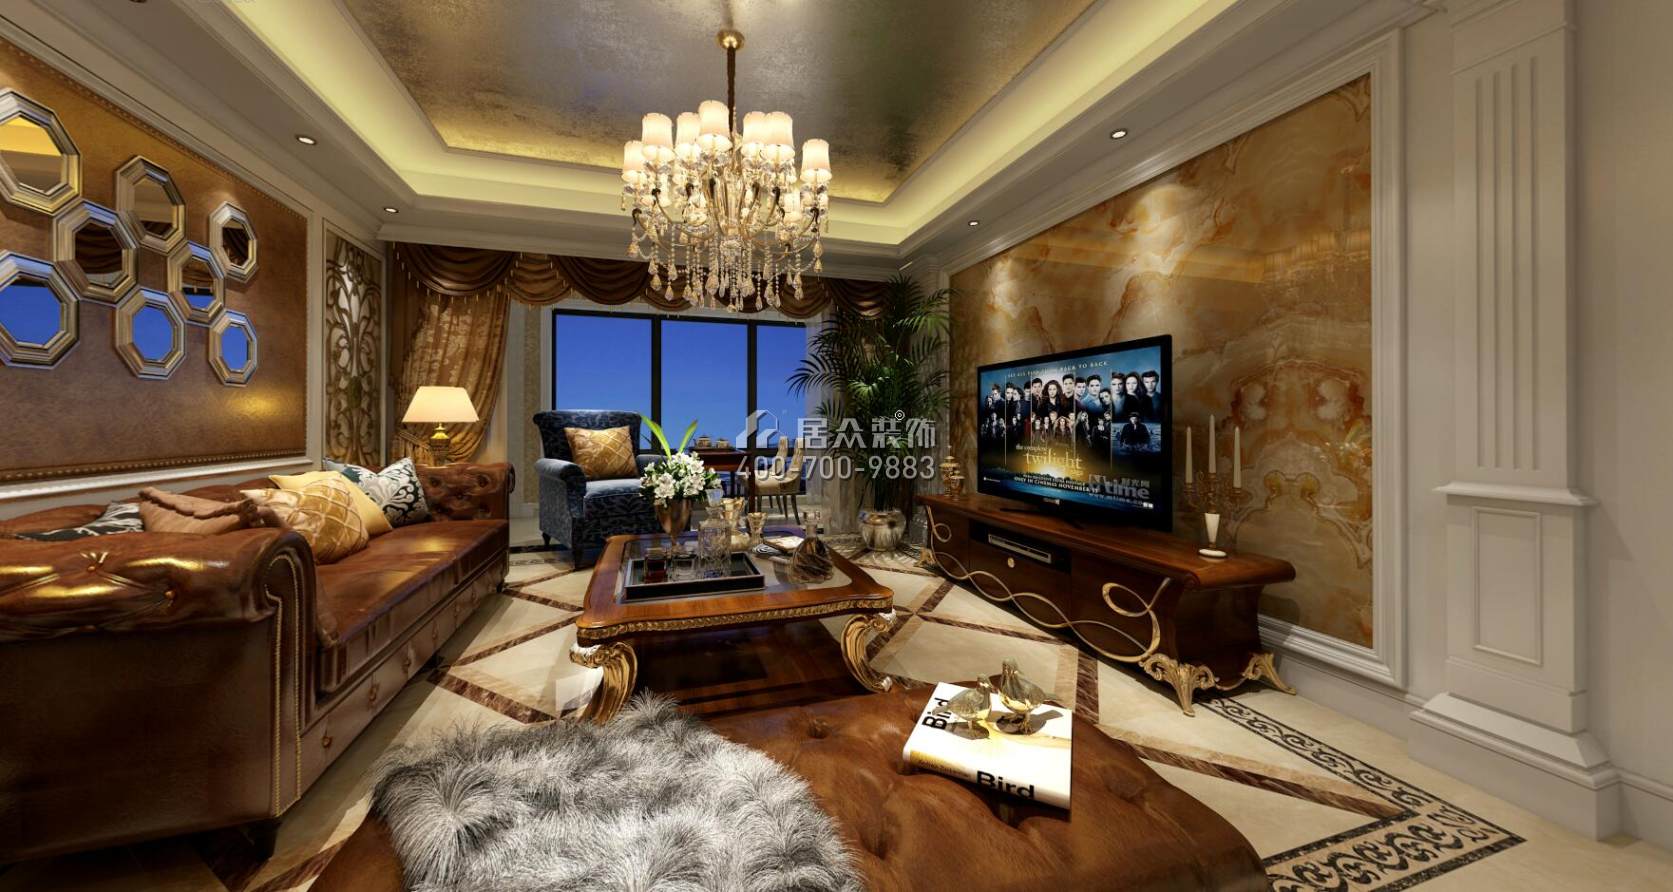 五矿紫湖香醍150平方米欧式风格平层户型客厅装修效果图